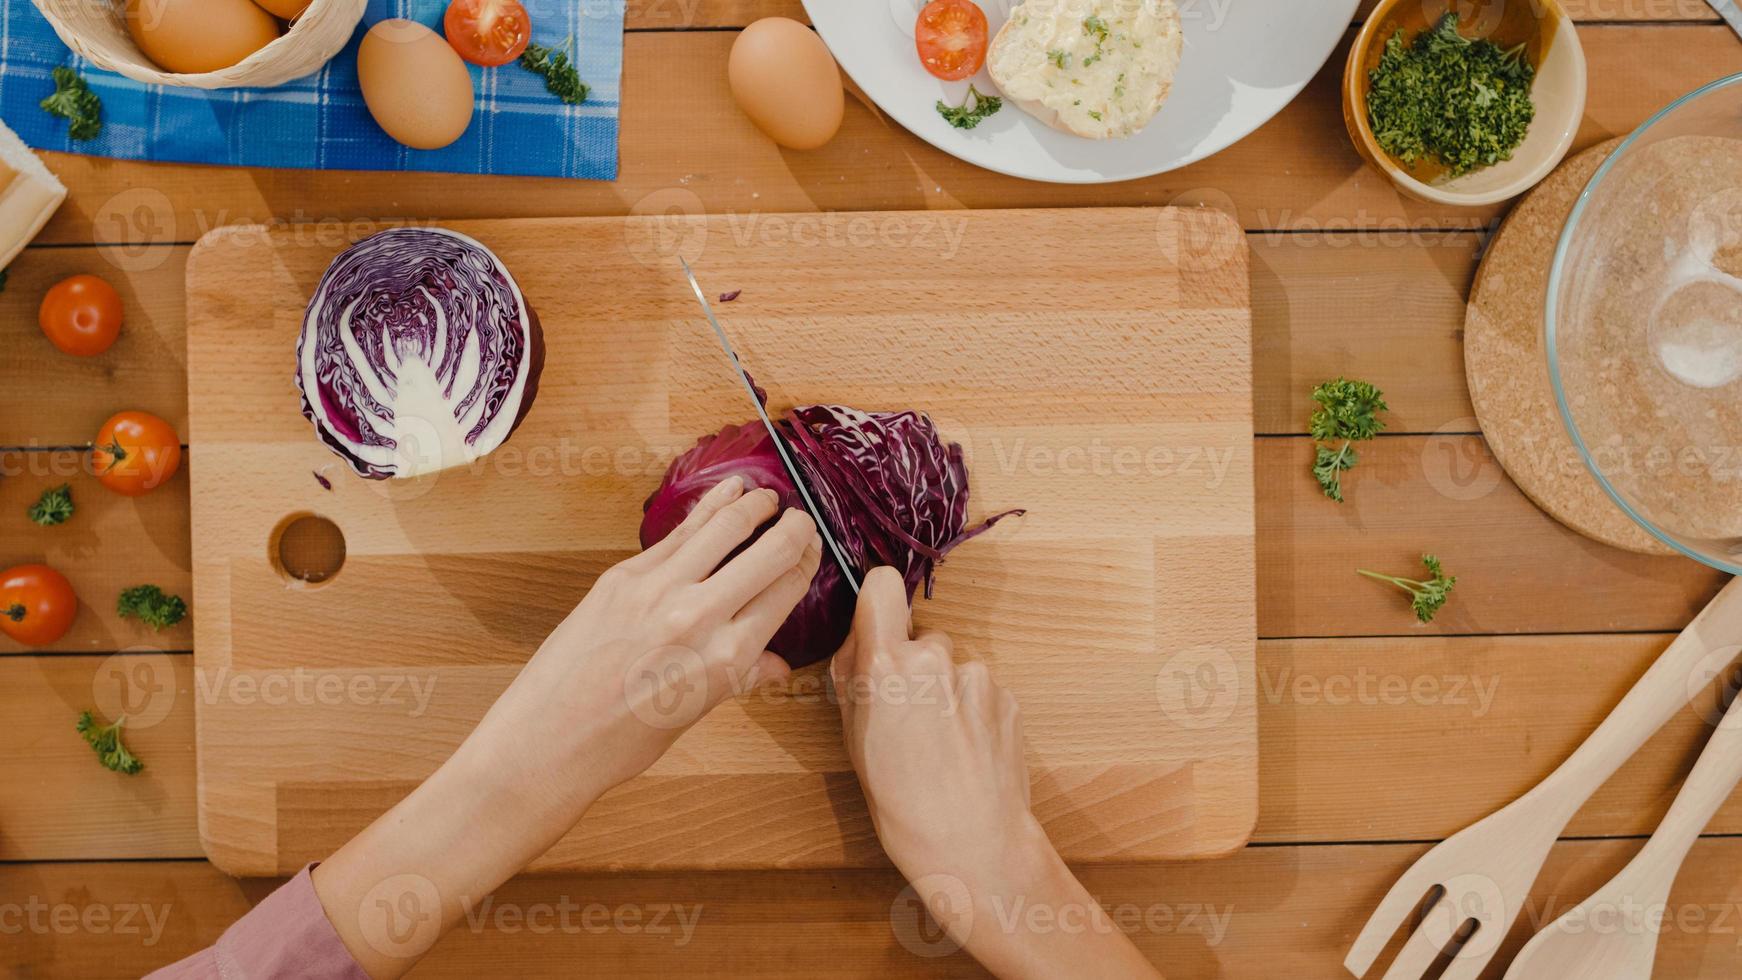 La mano del cocinero de la mujer asiática joven sostiene el cuchillo que corta el repollo rojo en la tabla de madera en la mesa de la cocina en casa. cocinar ensalada de verduras, comida sana de estilo de vida y concepto natural tradicional. tiro de la vista superior. foto